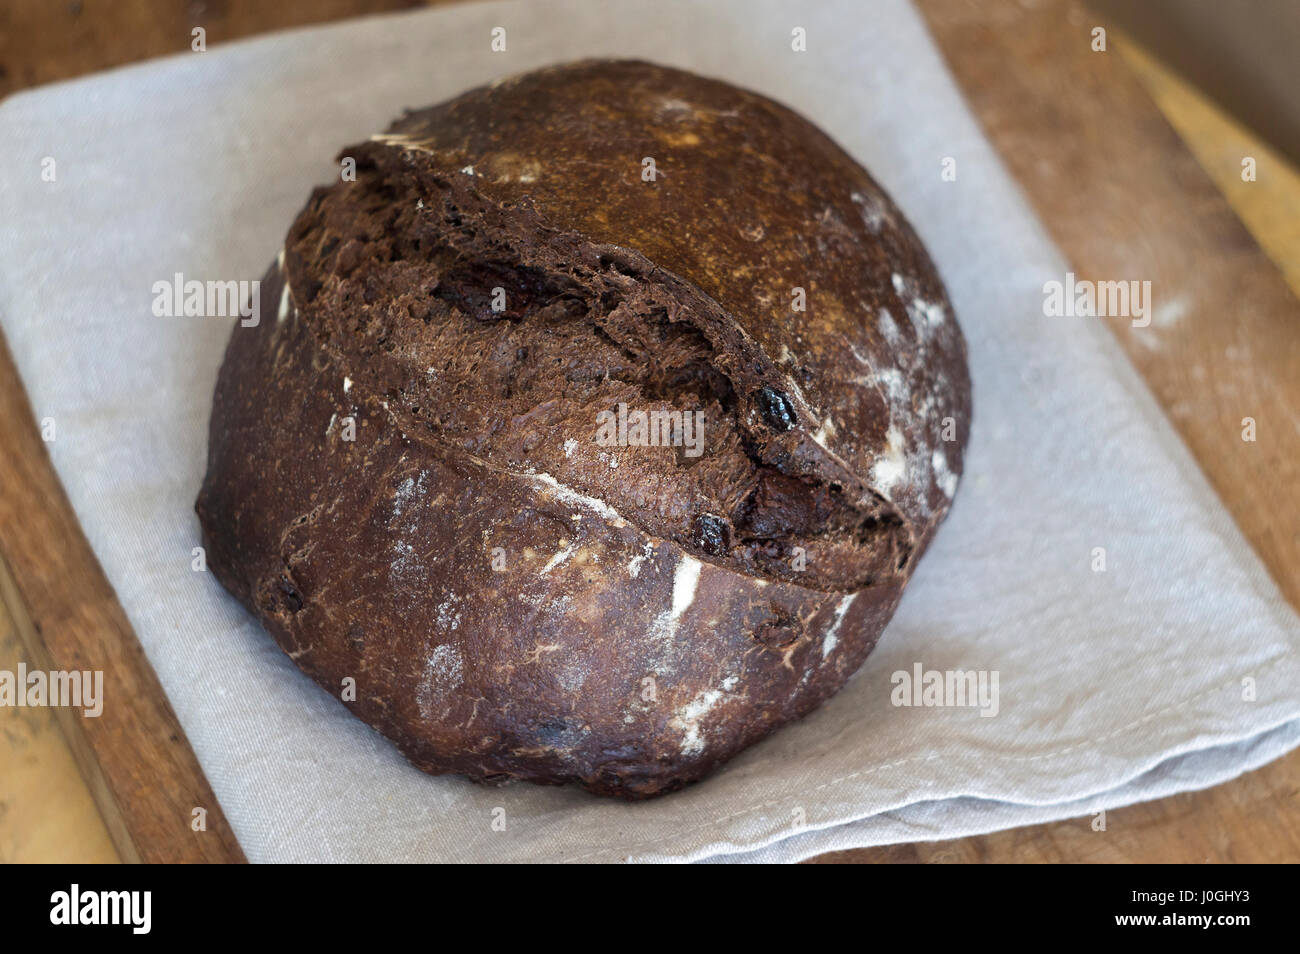 Nahaufnahme von Schokolade Handwerker Brot auf graues Küchentuch Stockfoto